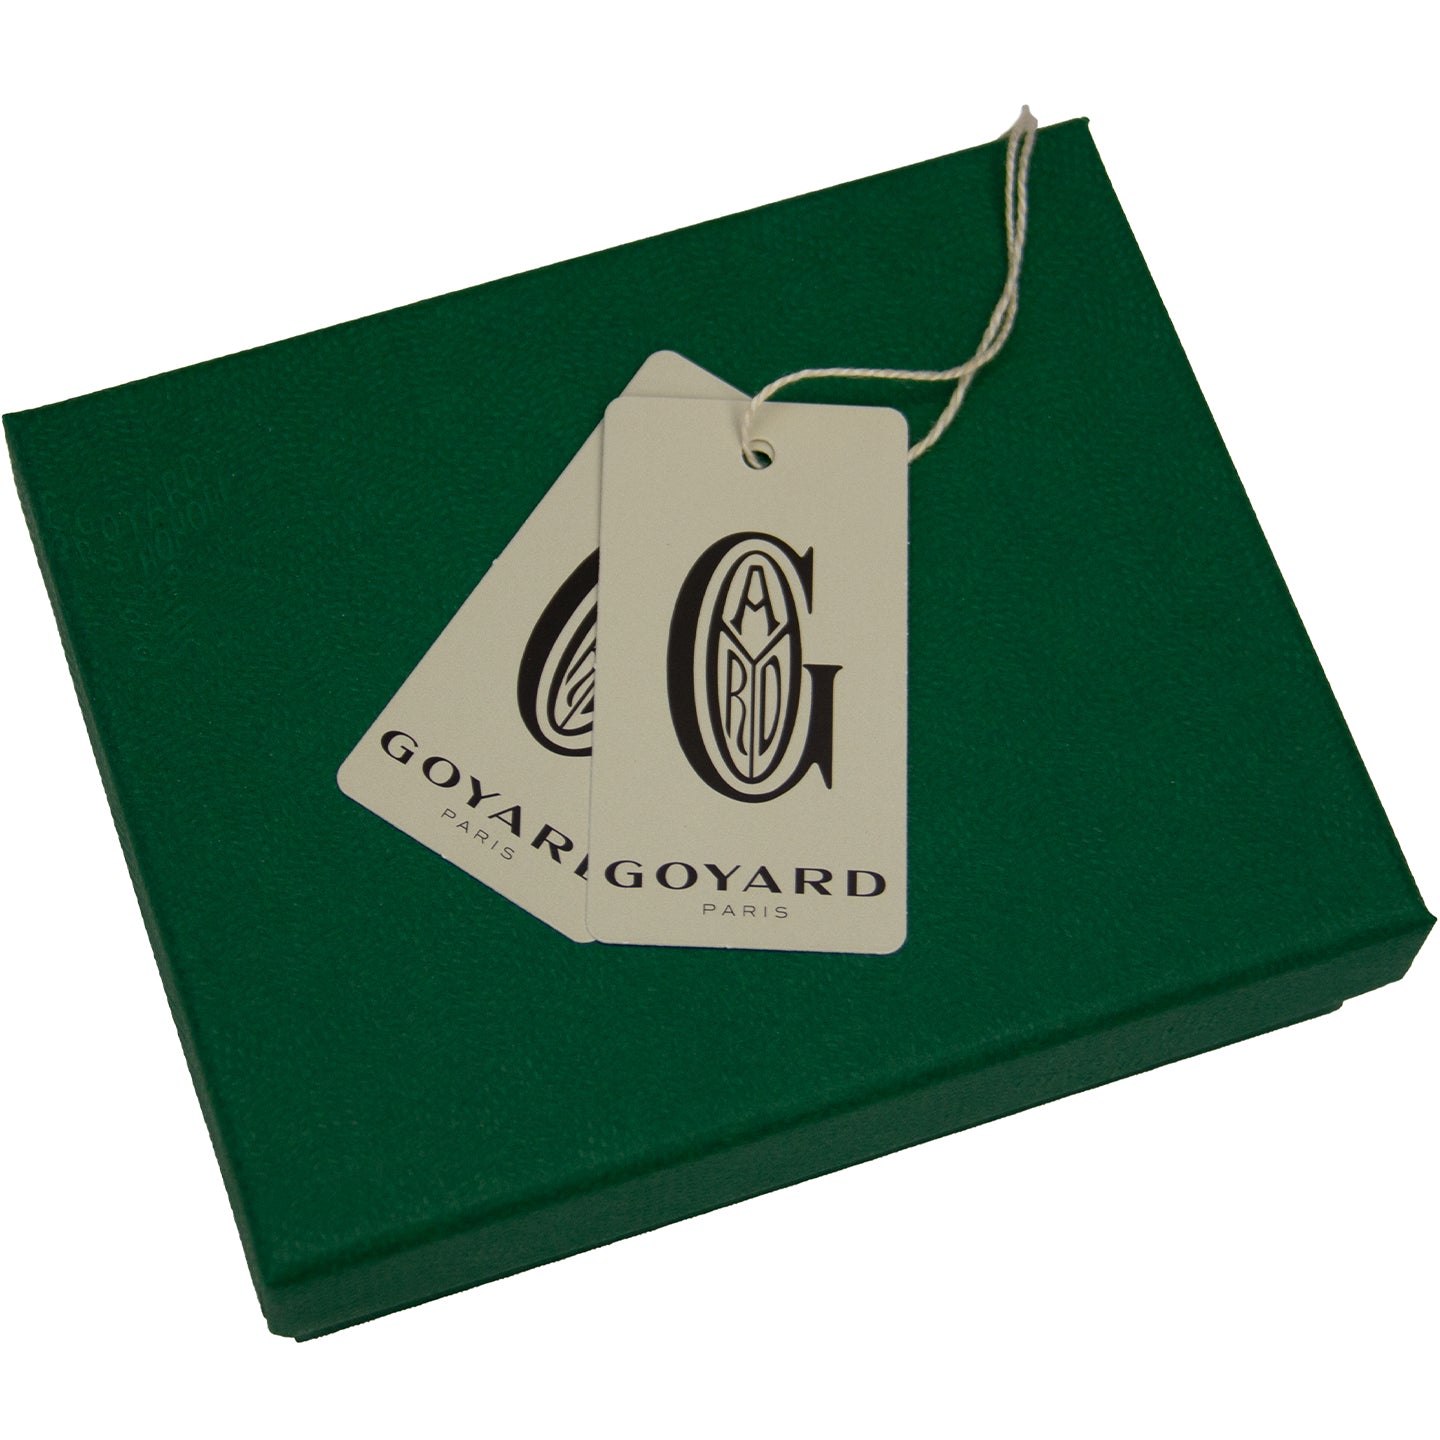 GOYARD SAINT SULPICE GREEN CARD HOLDER